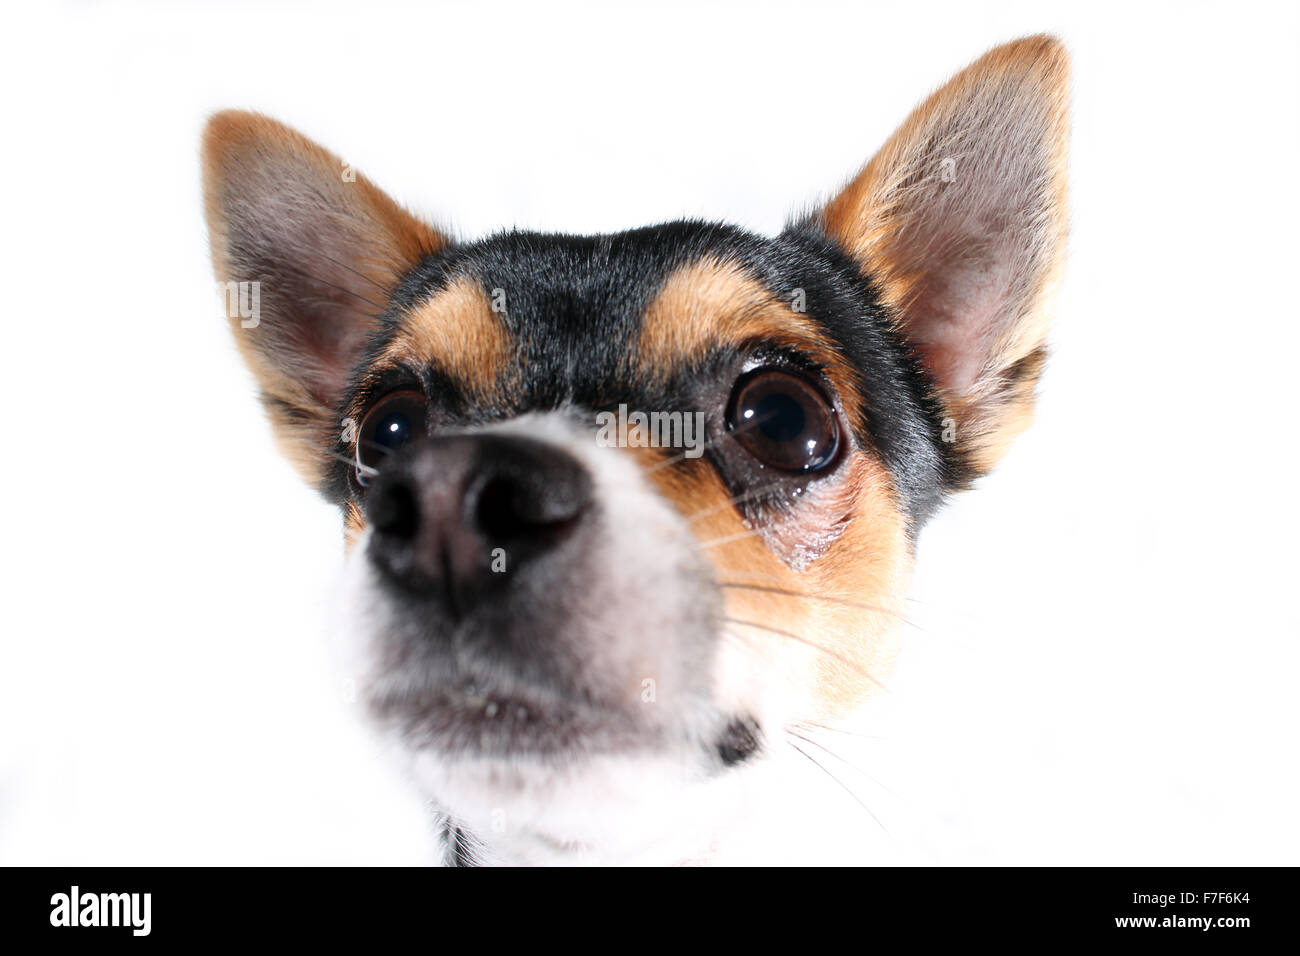 CARDIFF, VEREINIGTES GRUPPENAUSSTELLUNGEN. 7. November 2015. Ein Black And Tan Chihuahua männlichen Zugehörigkeit zu Stephanie Kingston Posen auf einem weißen Hintergrund. Stockfoto